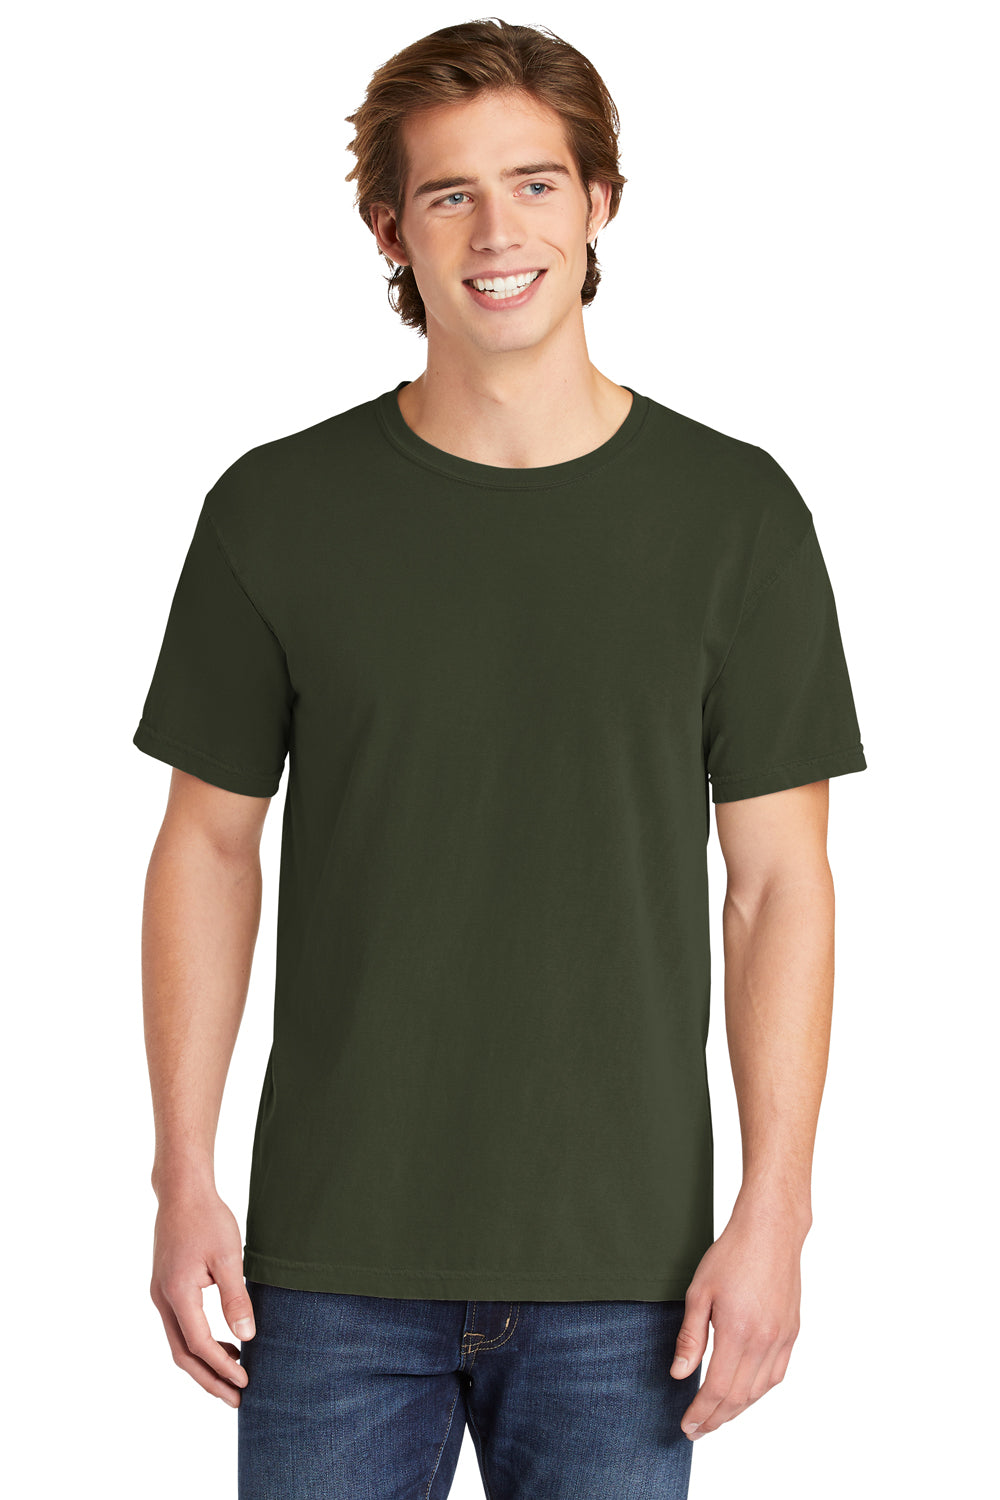 Comfort Colors 1717/C1717 Mens Short Sleeve Crewneck T-Shirt Hemp Green Front